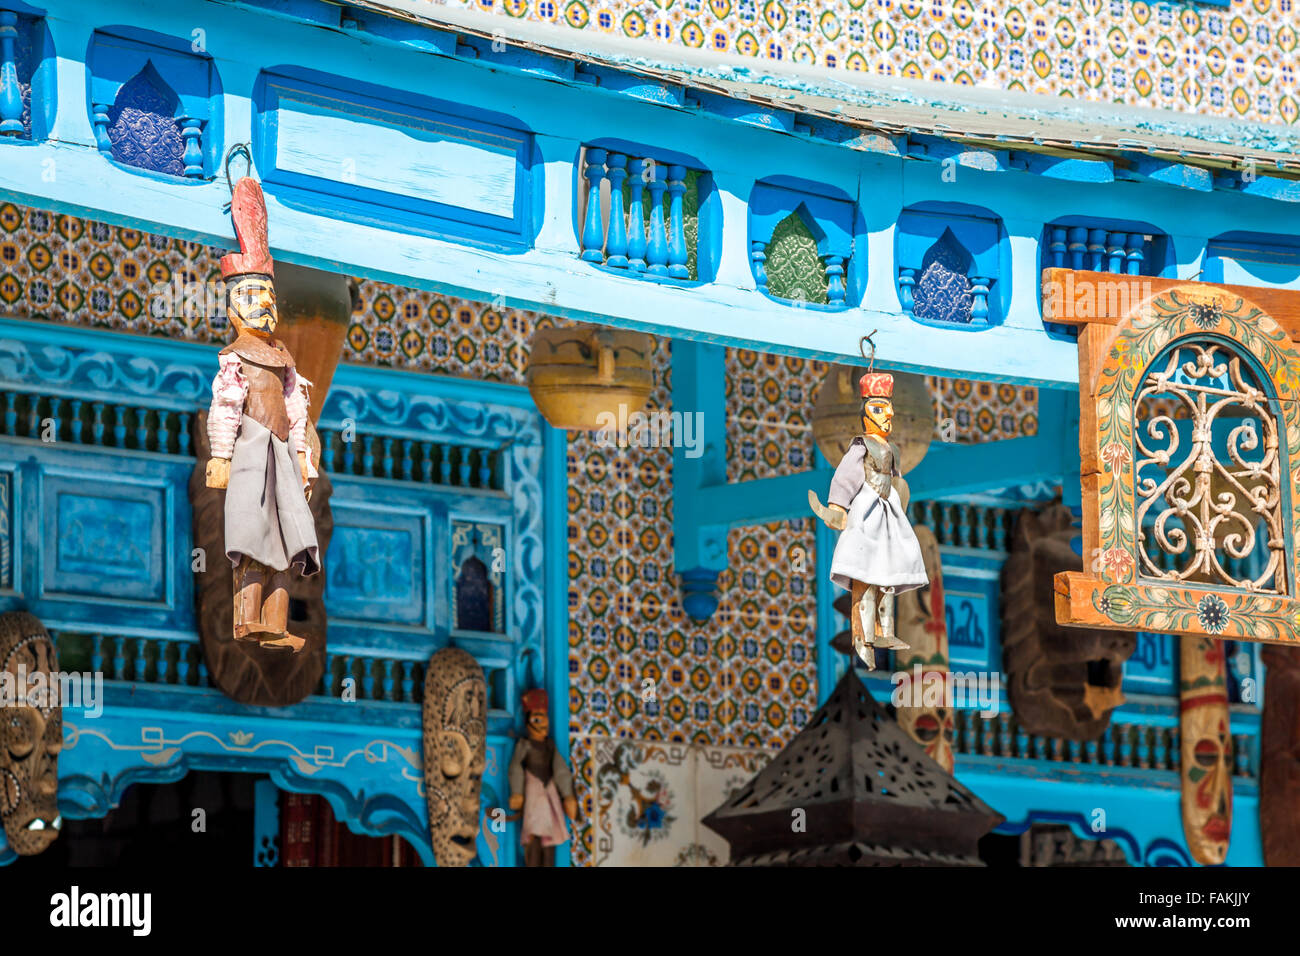 Traditional Arabic architecture in El-Jem, Tunisia Stock Photo